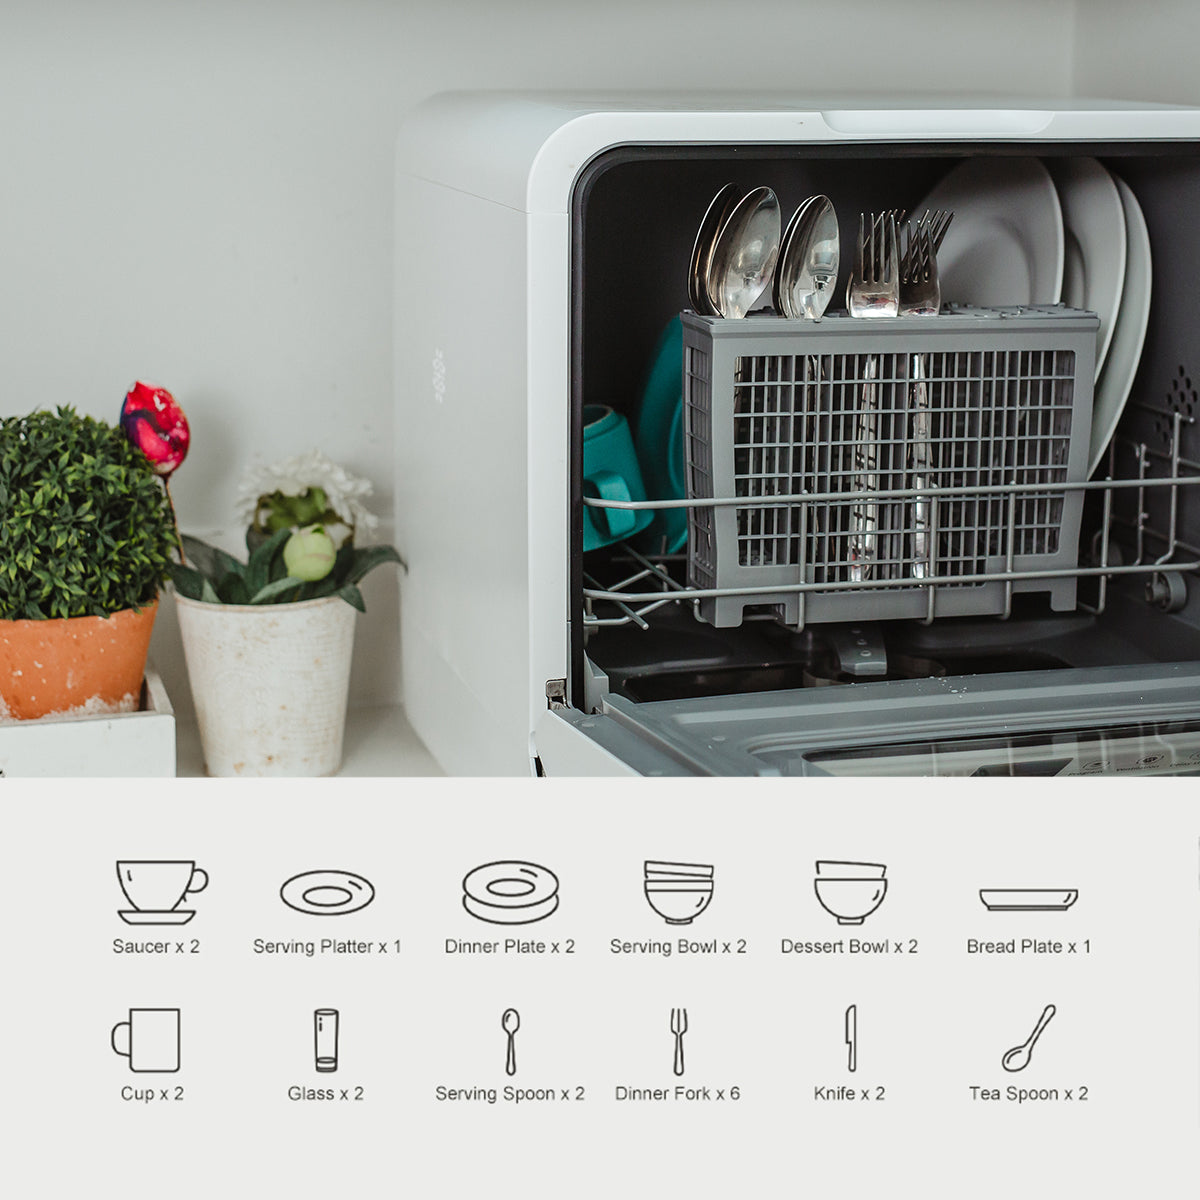 VENTRAY 小型台式全自动智能洗碗机 五大洗涤模式 带烘干功能 DW55AD